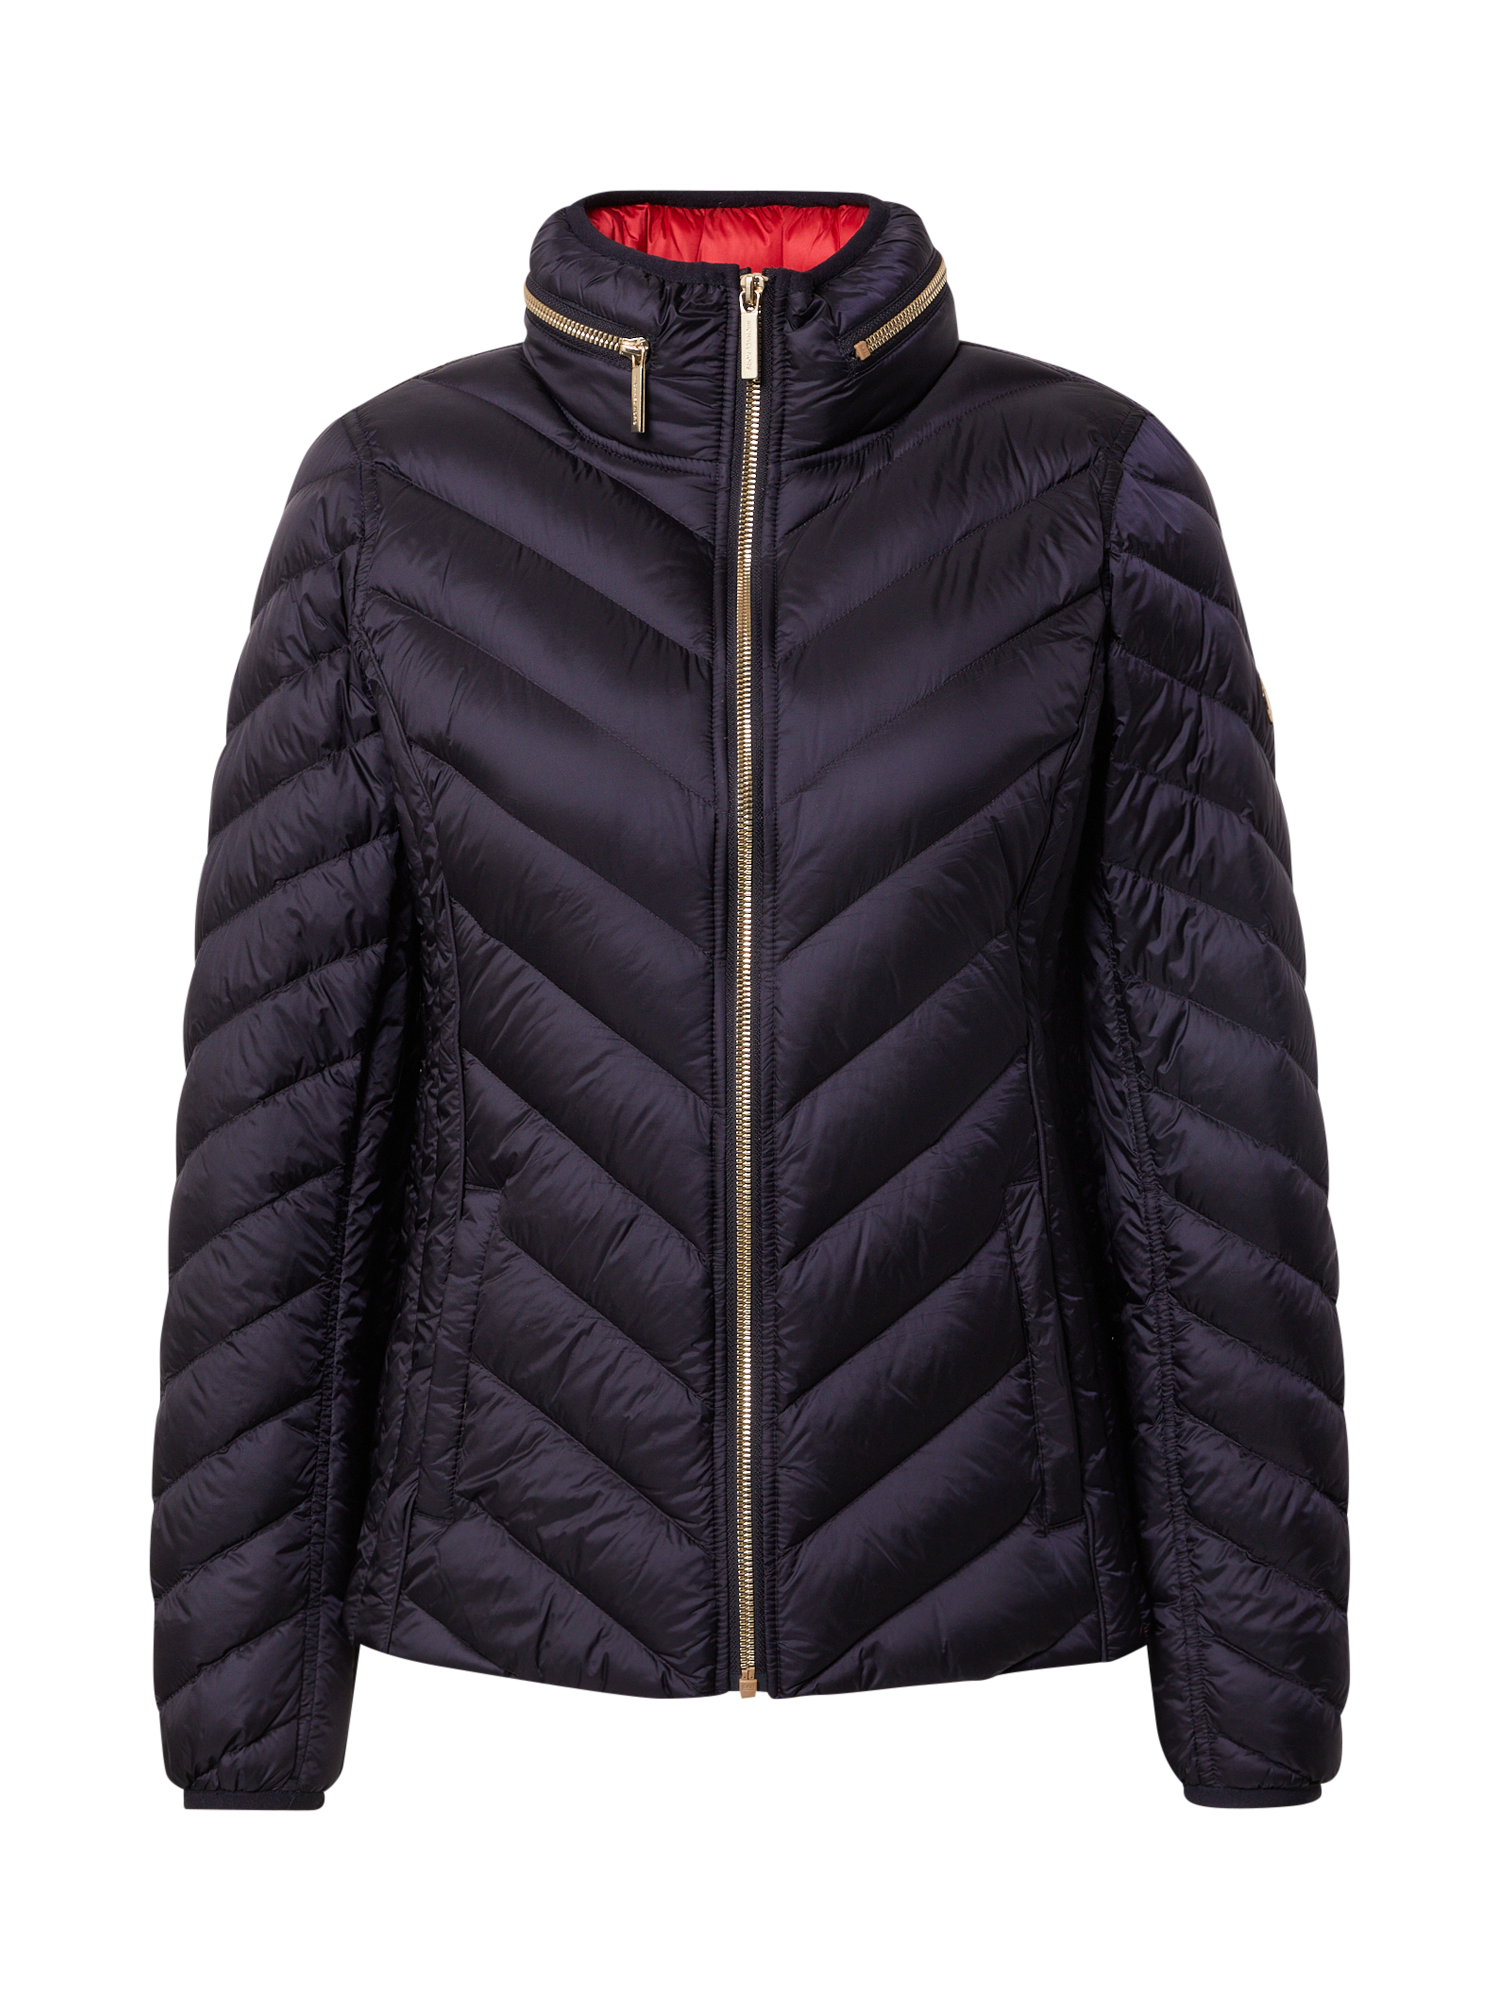 Odzież Kurtki & płaszcze MICHAEL Michael Kors Kurtka przejściowa Short packable Puffer w kolorze Granatowym 